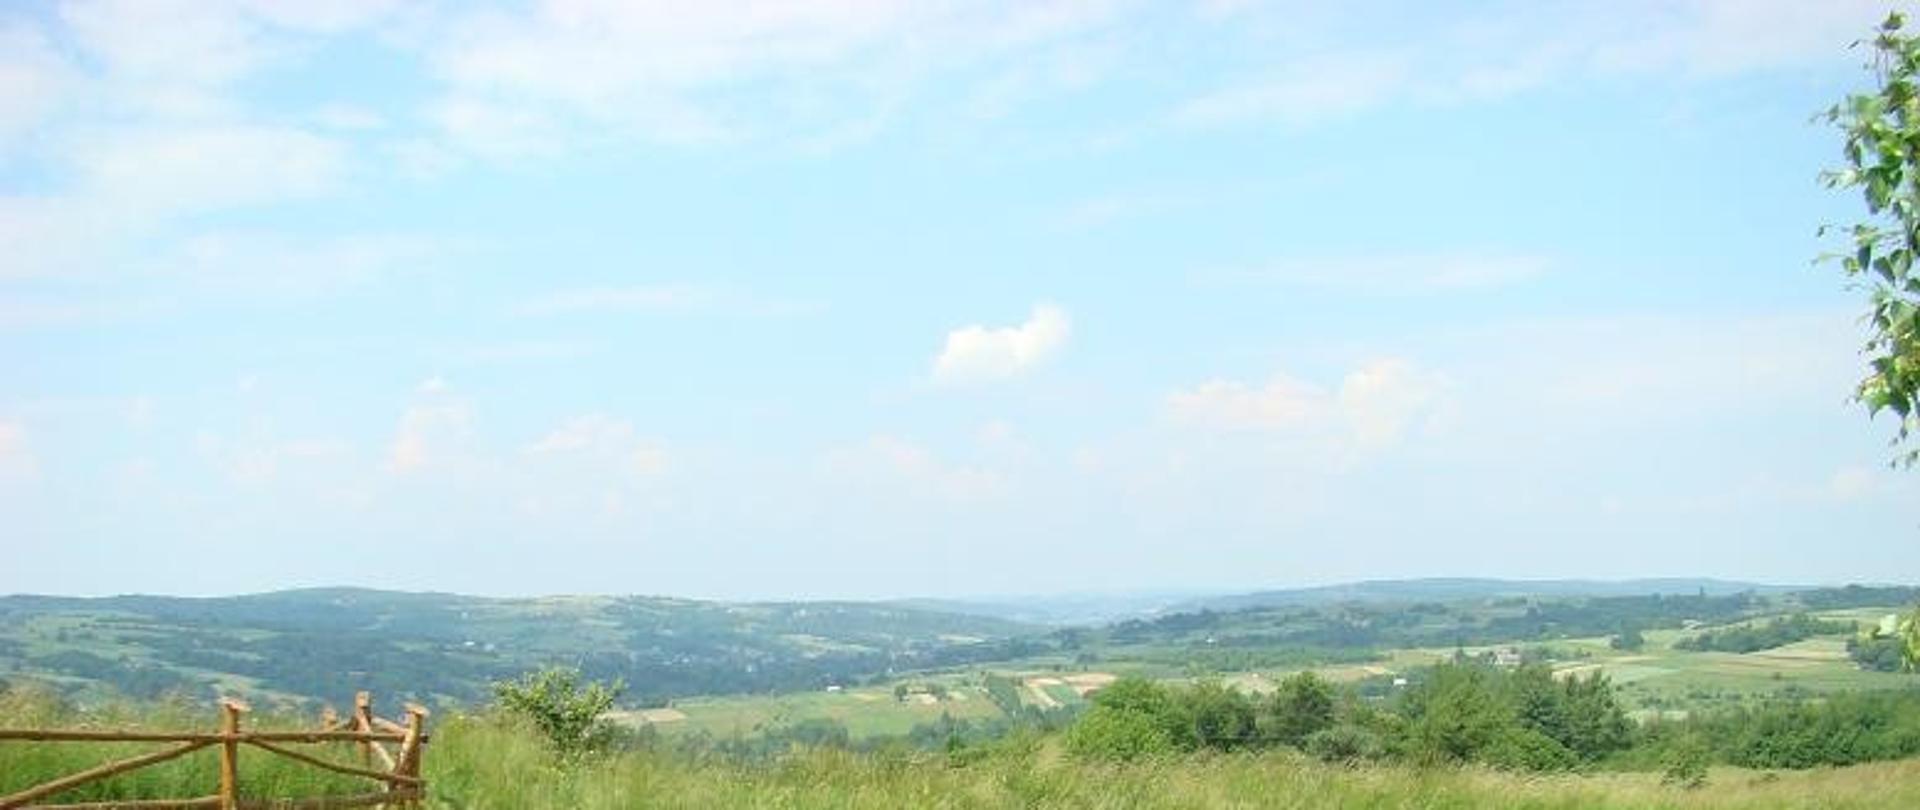 zdjęcie widokowe w oddali miejscowość Lubenia i okolice daleki horyzont widoczne niebo po prawej duży kamień ławka widoczna droga asfaltowa ogrodzenie zielona łąka oraz zadrzewienia